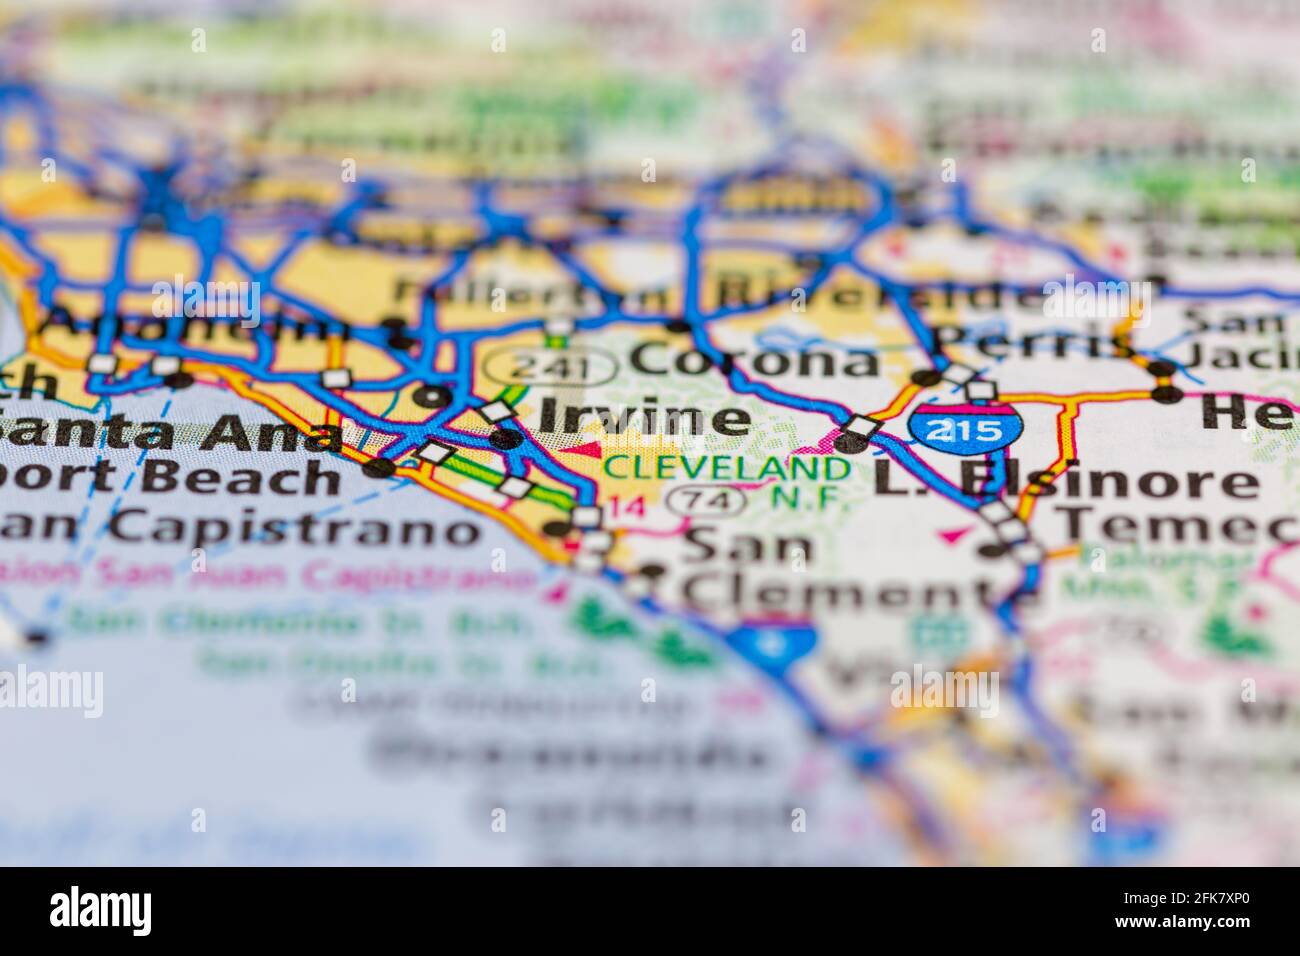 Irvine California USA indiqué sur une carte de la géographie ou sur une route carte Banque D'Images